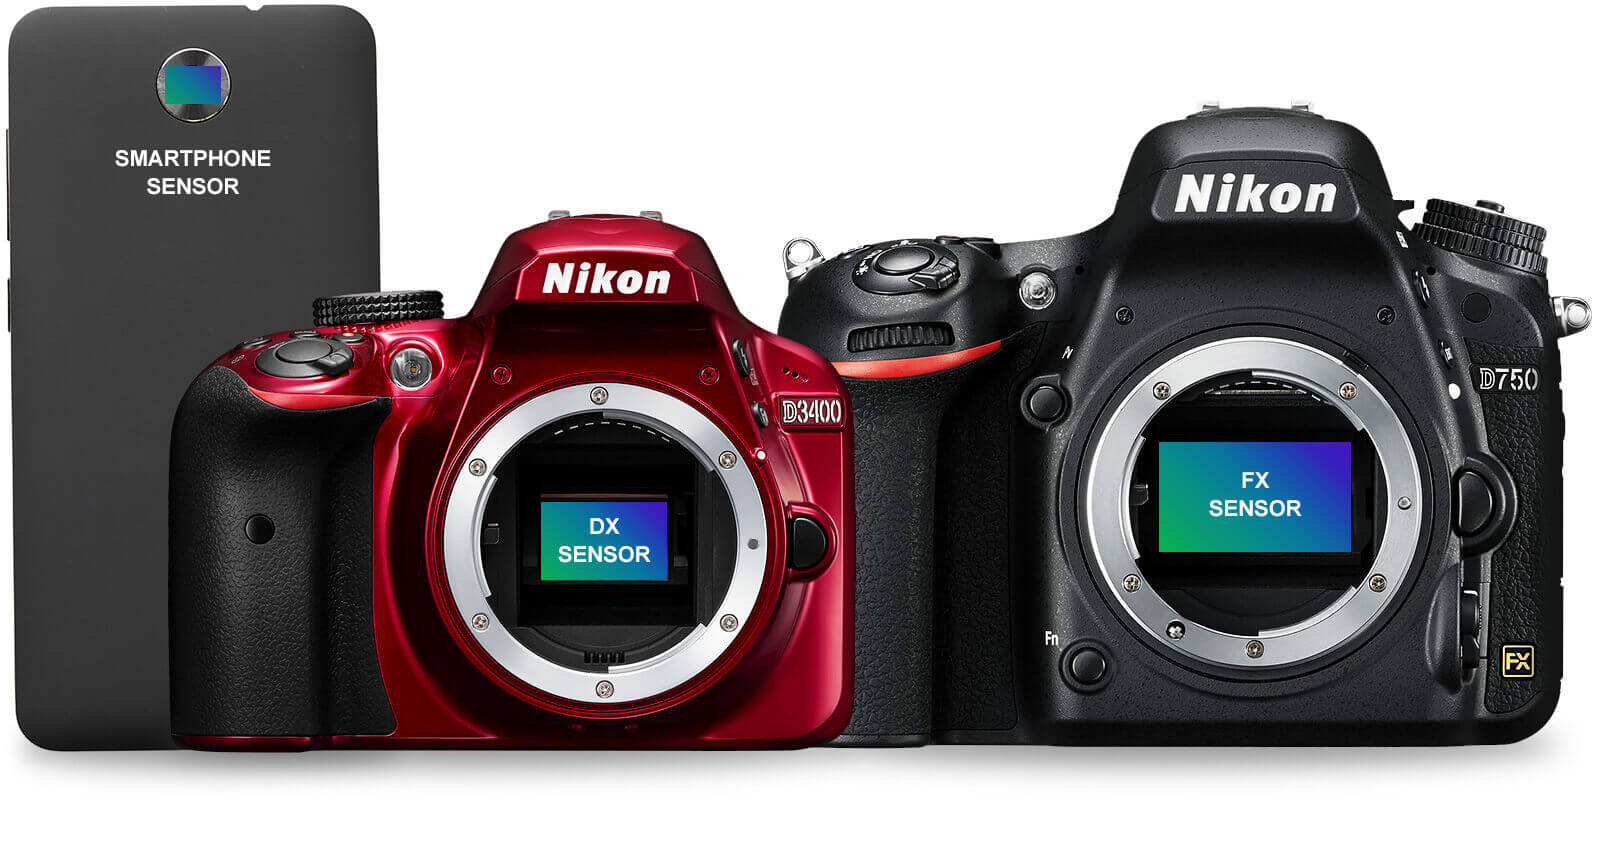 modelos cameras nikon digitales profesionales de forex